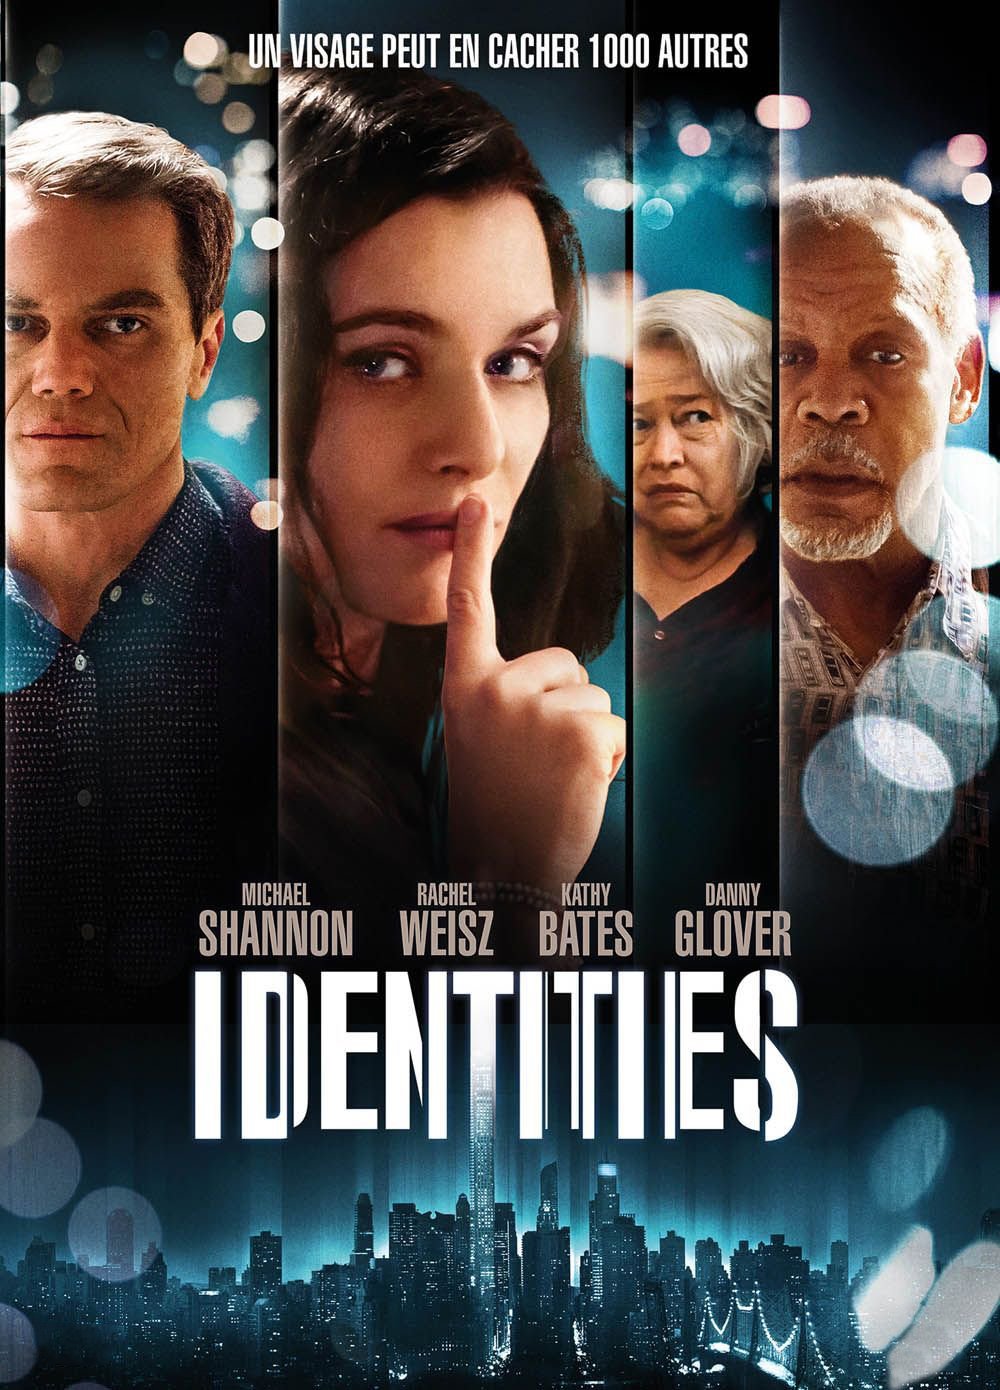 affiche du film Identities